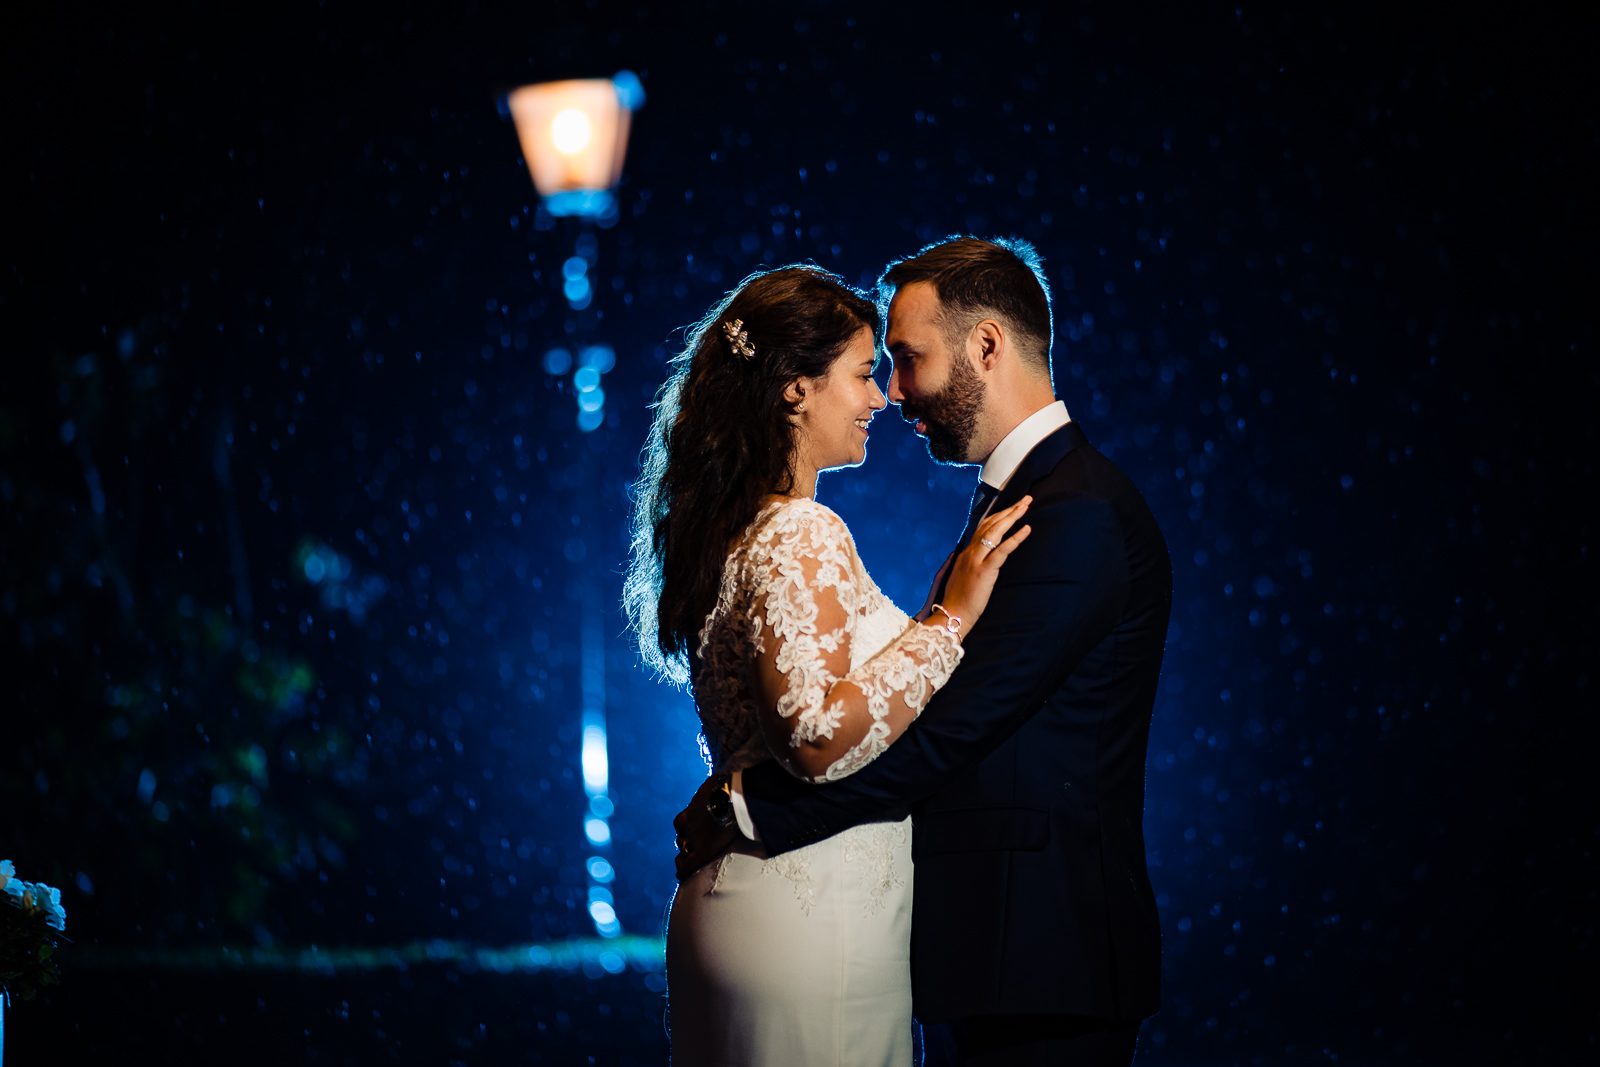 Regen fotoshoot met trouwfotograaf Den Haag